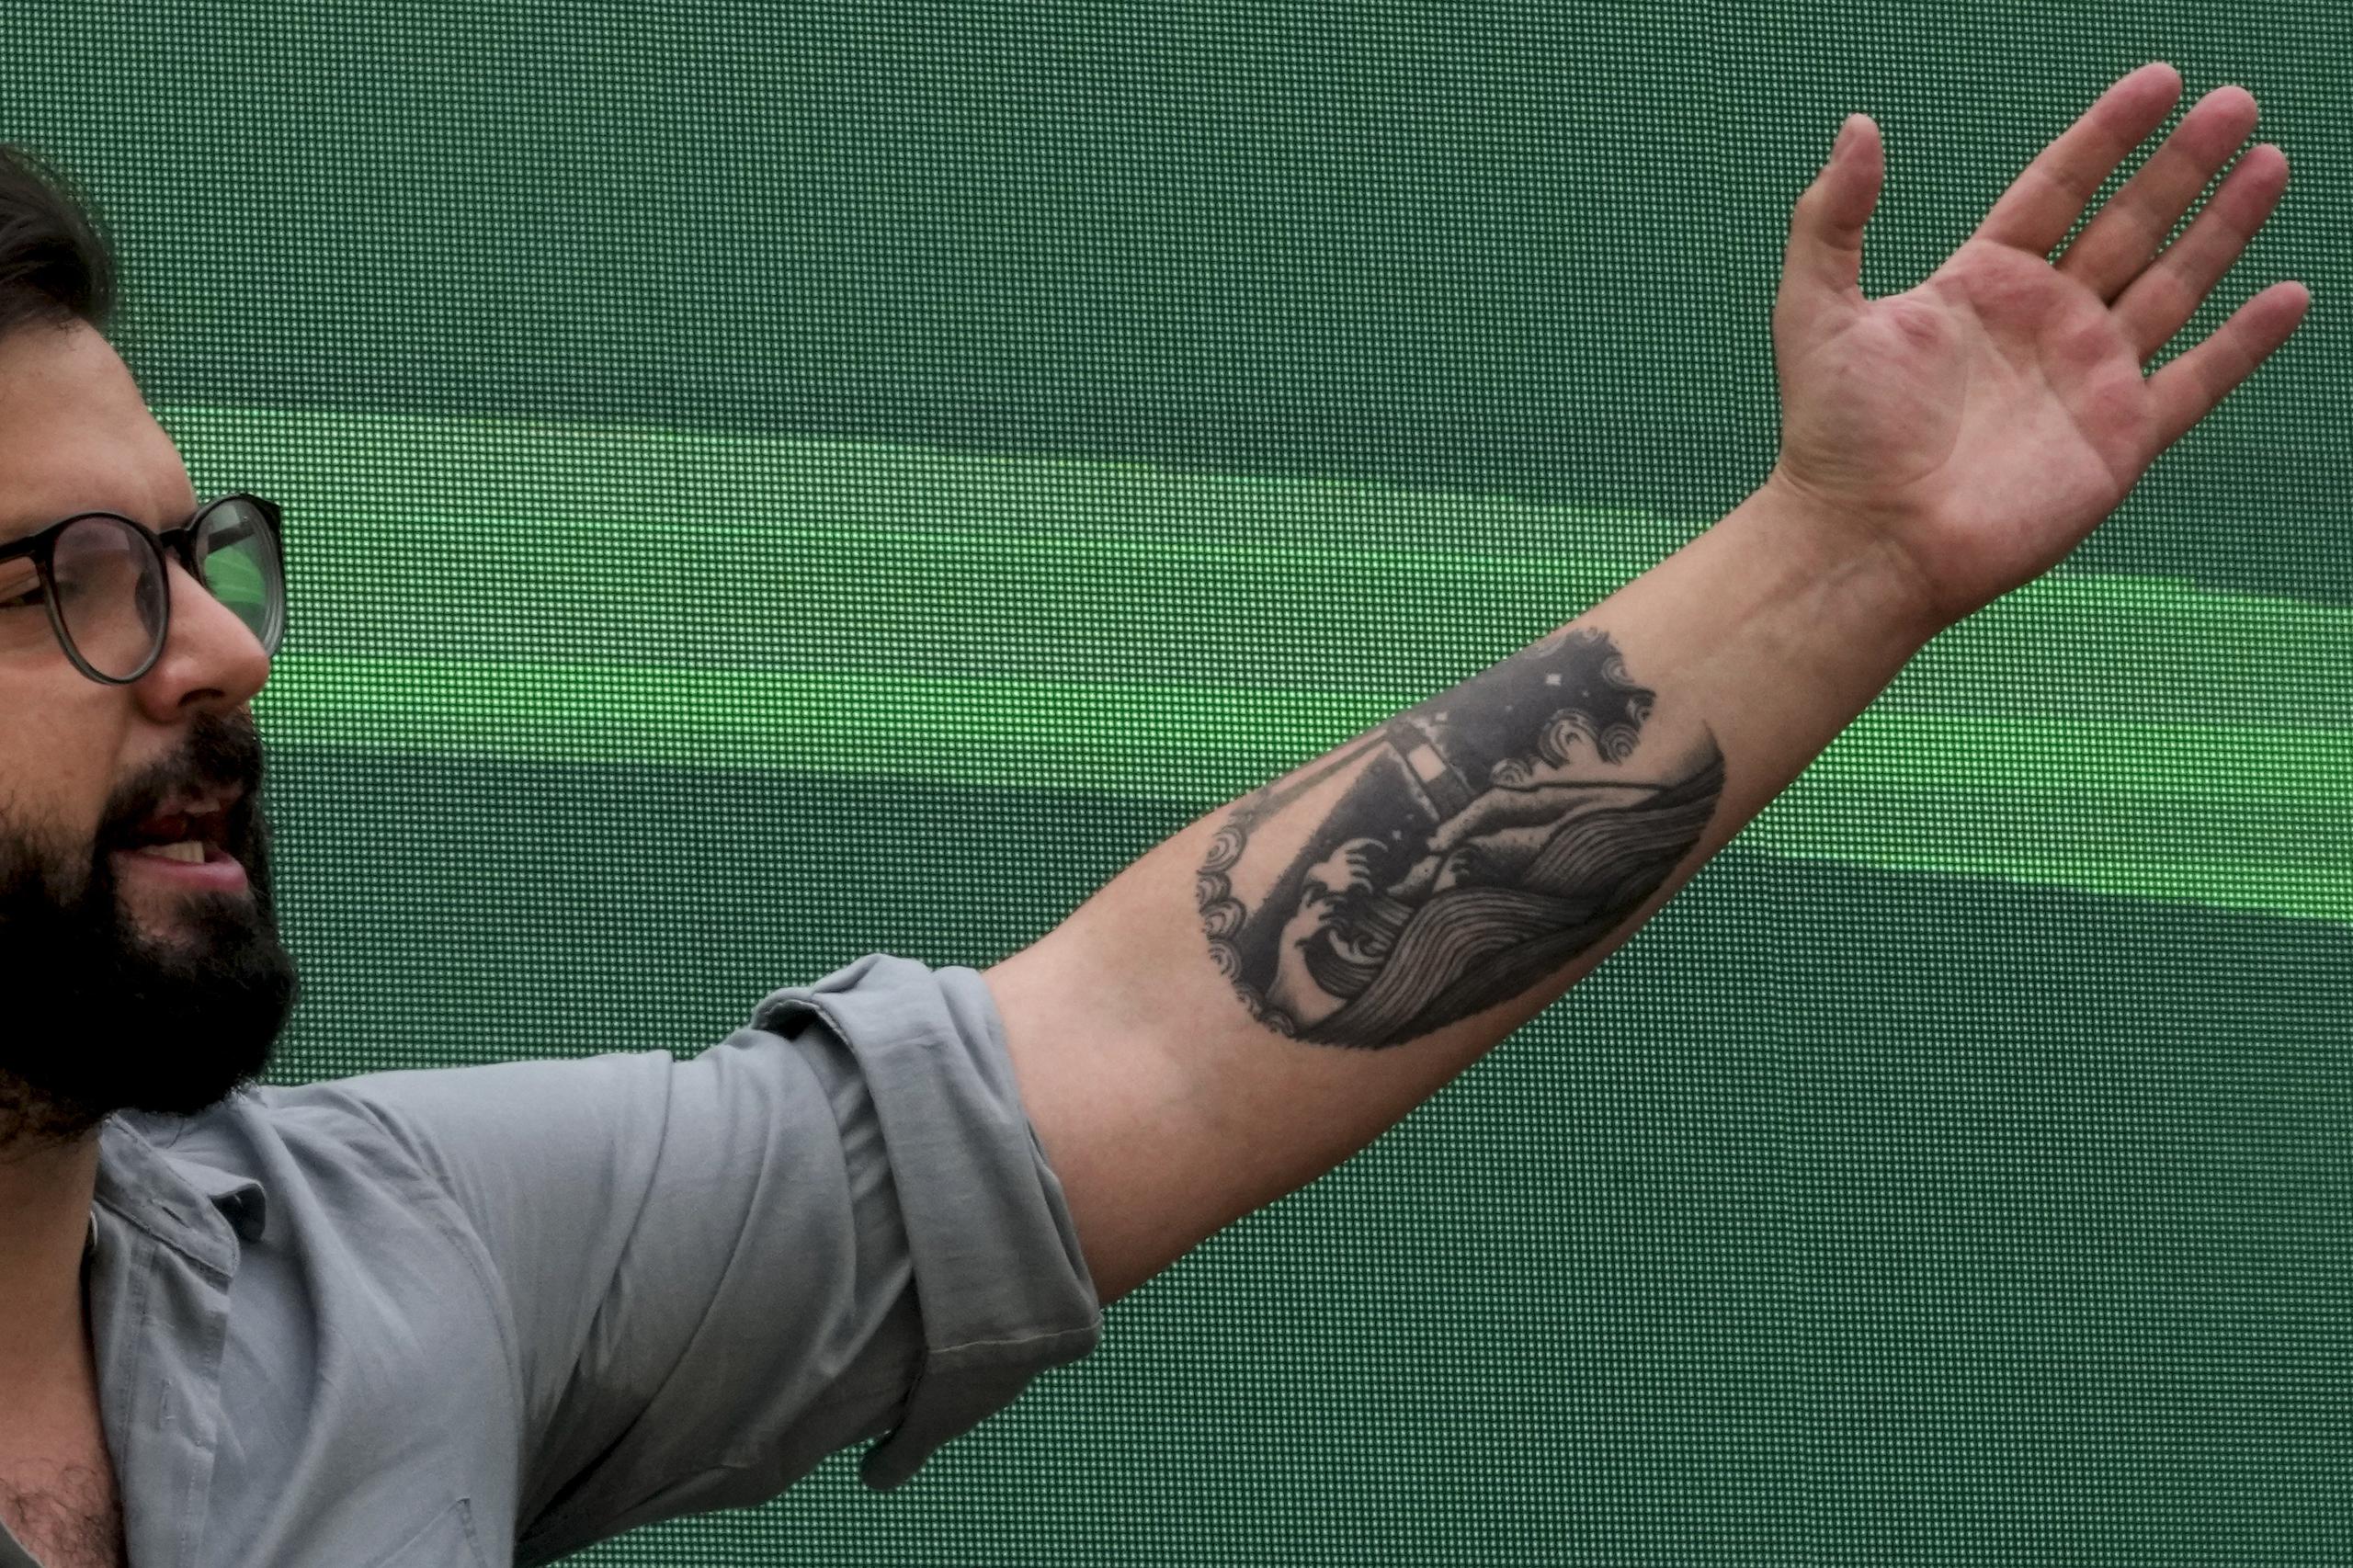 El tatuaje en el brazo del ahora presidente electo muestra la famosa ruta marítima en el sur de Chile, de donde proviene Boric. (Foto AP / Esteban Felix)